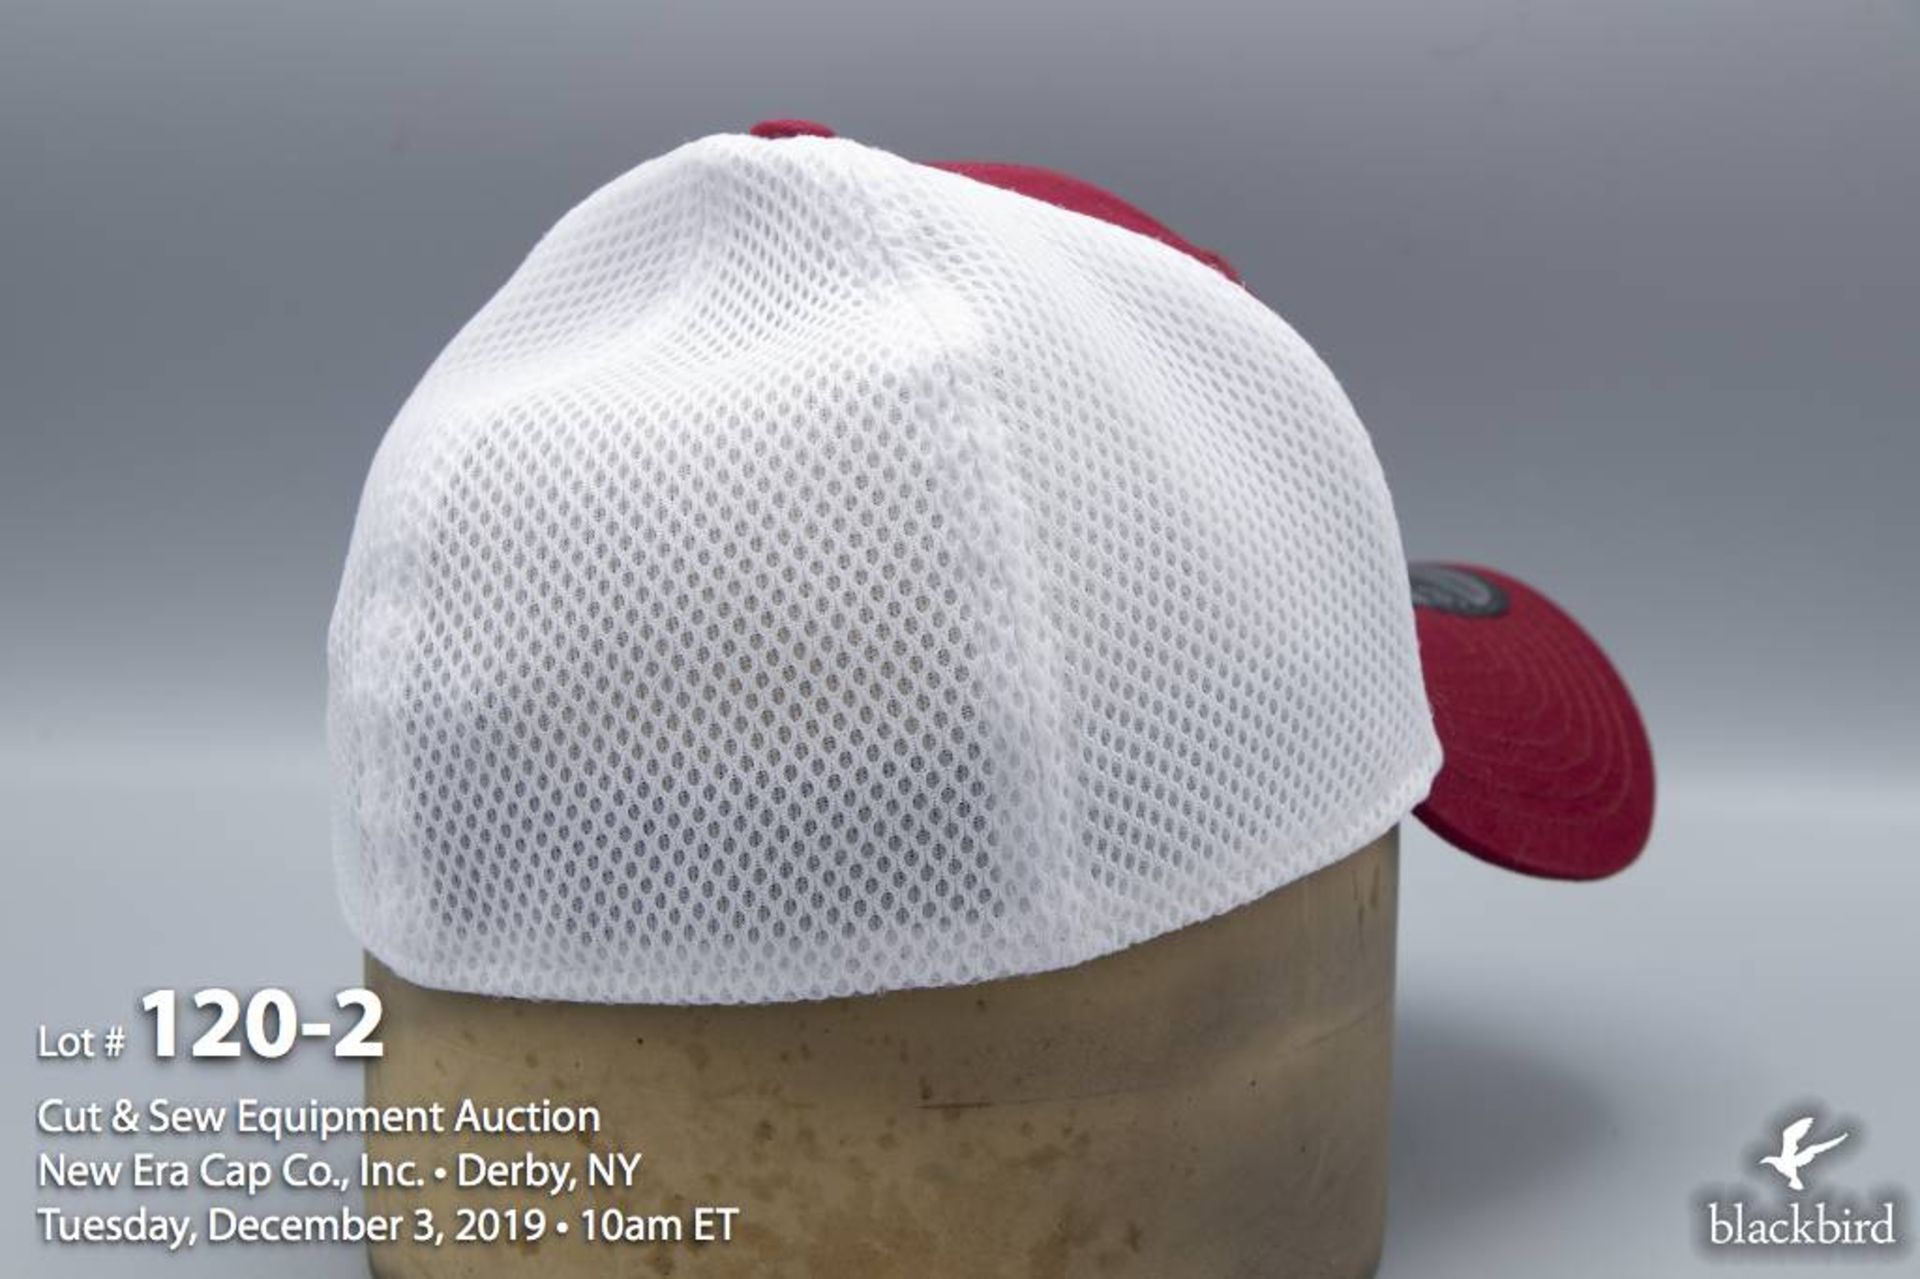 (72) New Era 39THIRTY Hat Semester Cardinal / White (Medium / Large) - Image 2 of 4